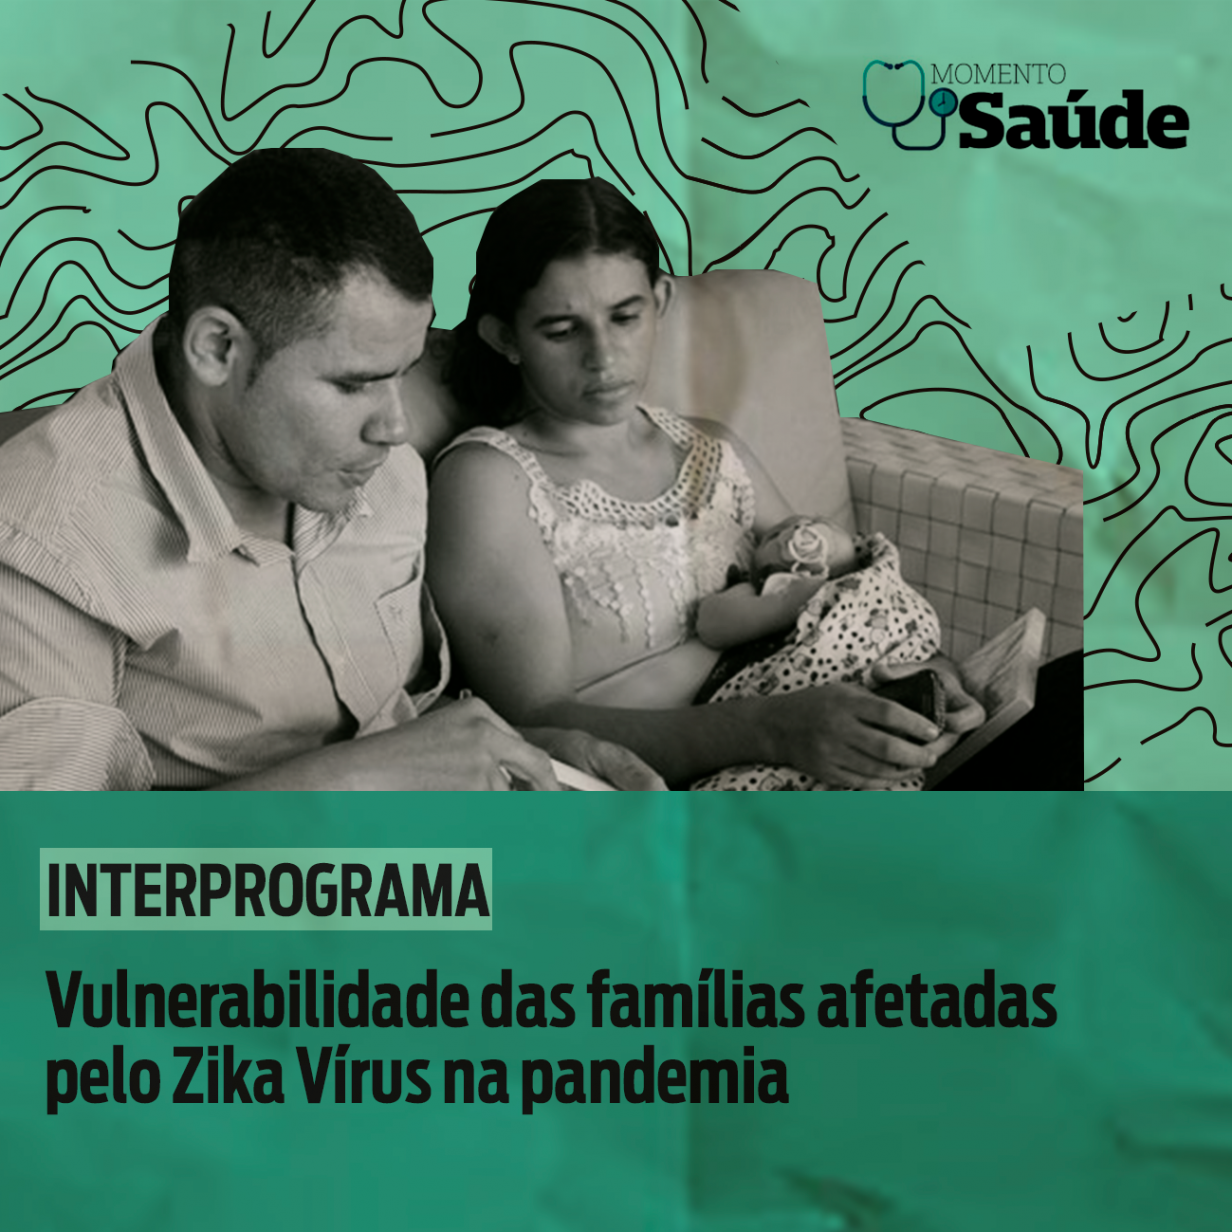 Vulnerabilidade das famílias afetadas pelo zika vírus na pandemia